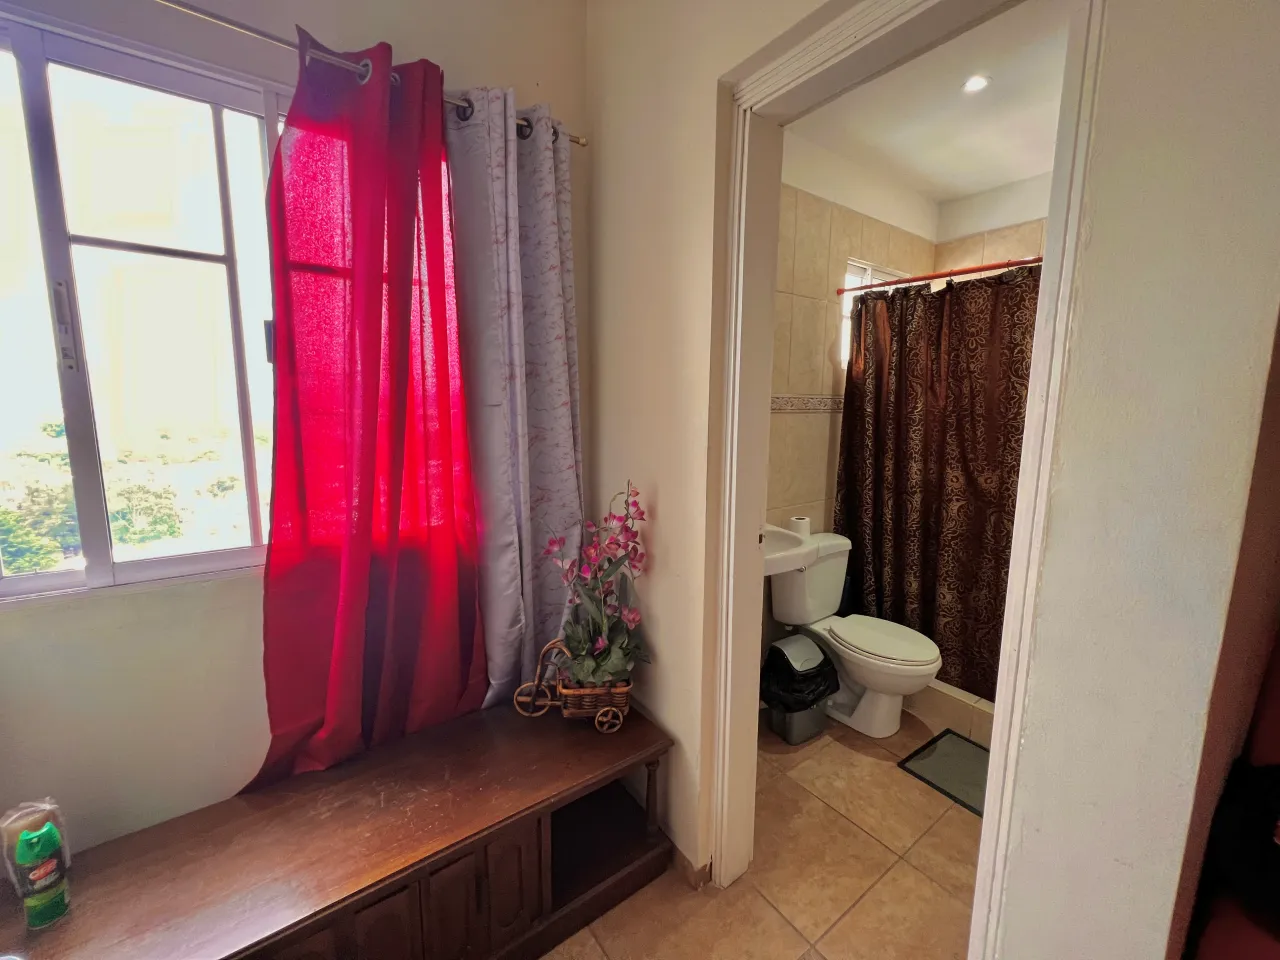 El baño contiene pared de cerámica para darle un toque diferente al resto de la casa, cuenta con ducha, lavamanos y excusado de color blanco.